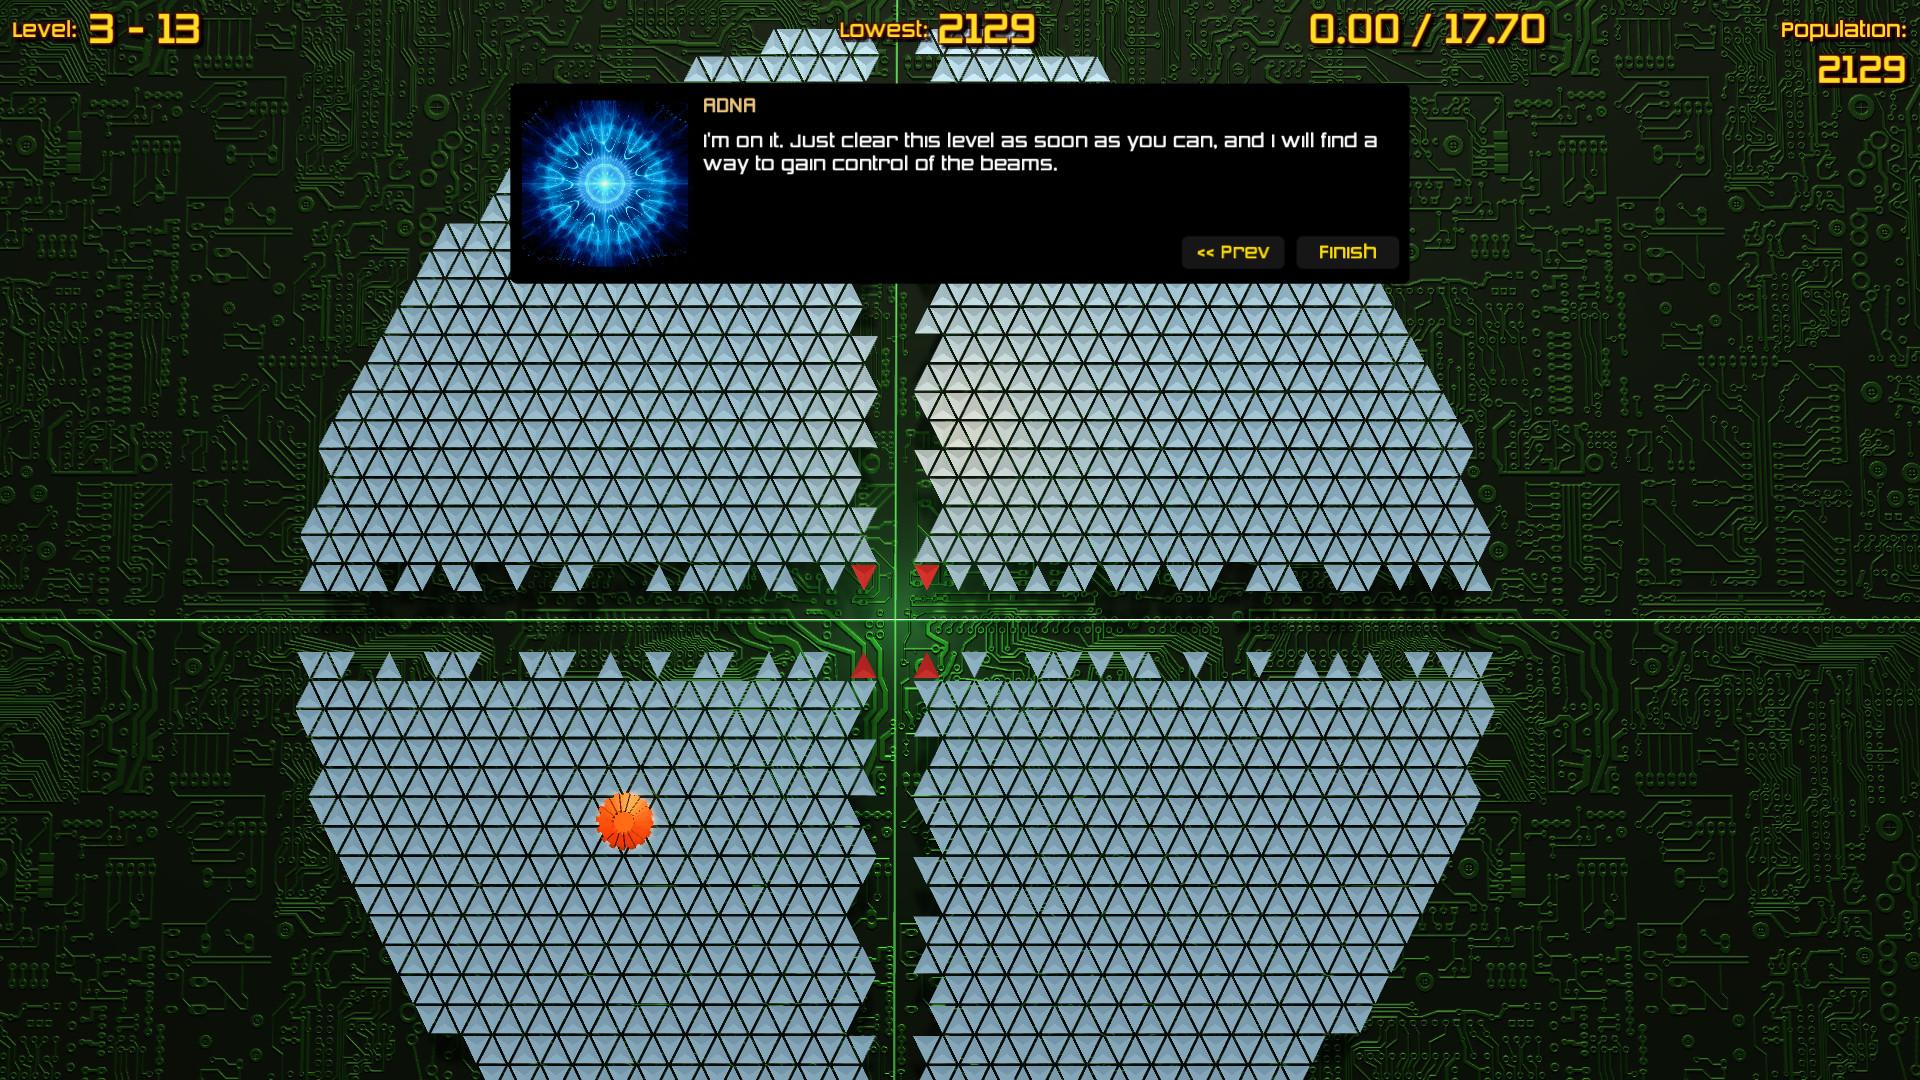 Screenshot №3 from game Nanobots